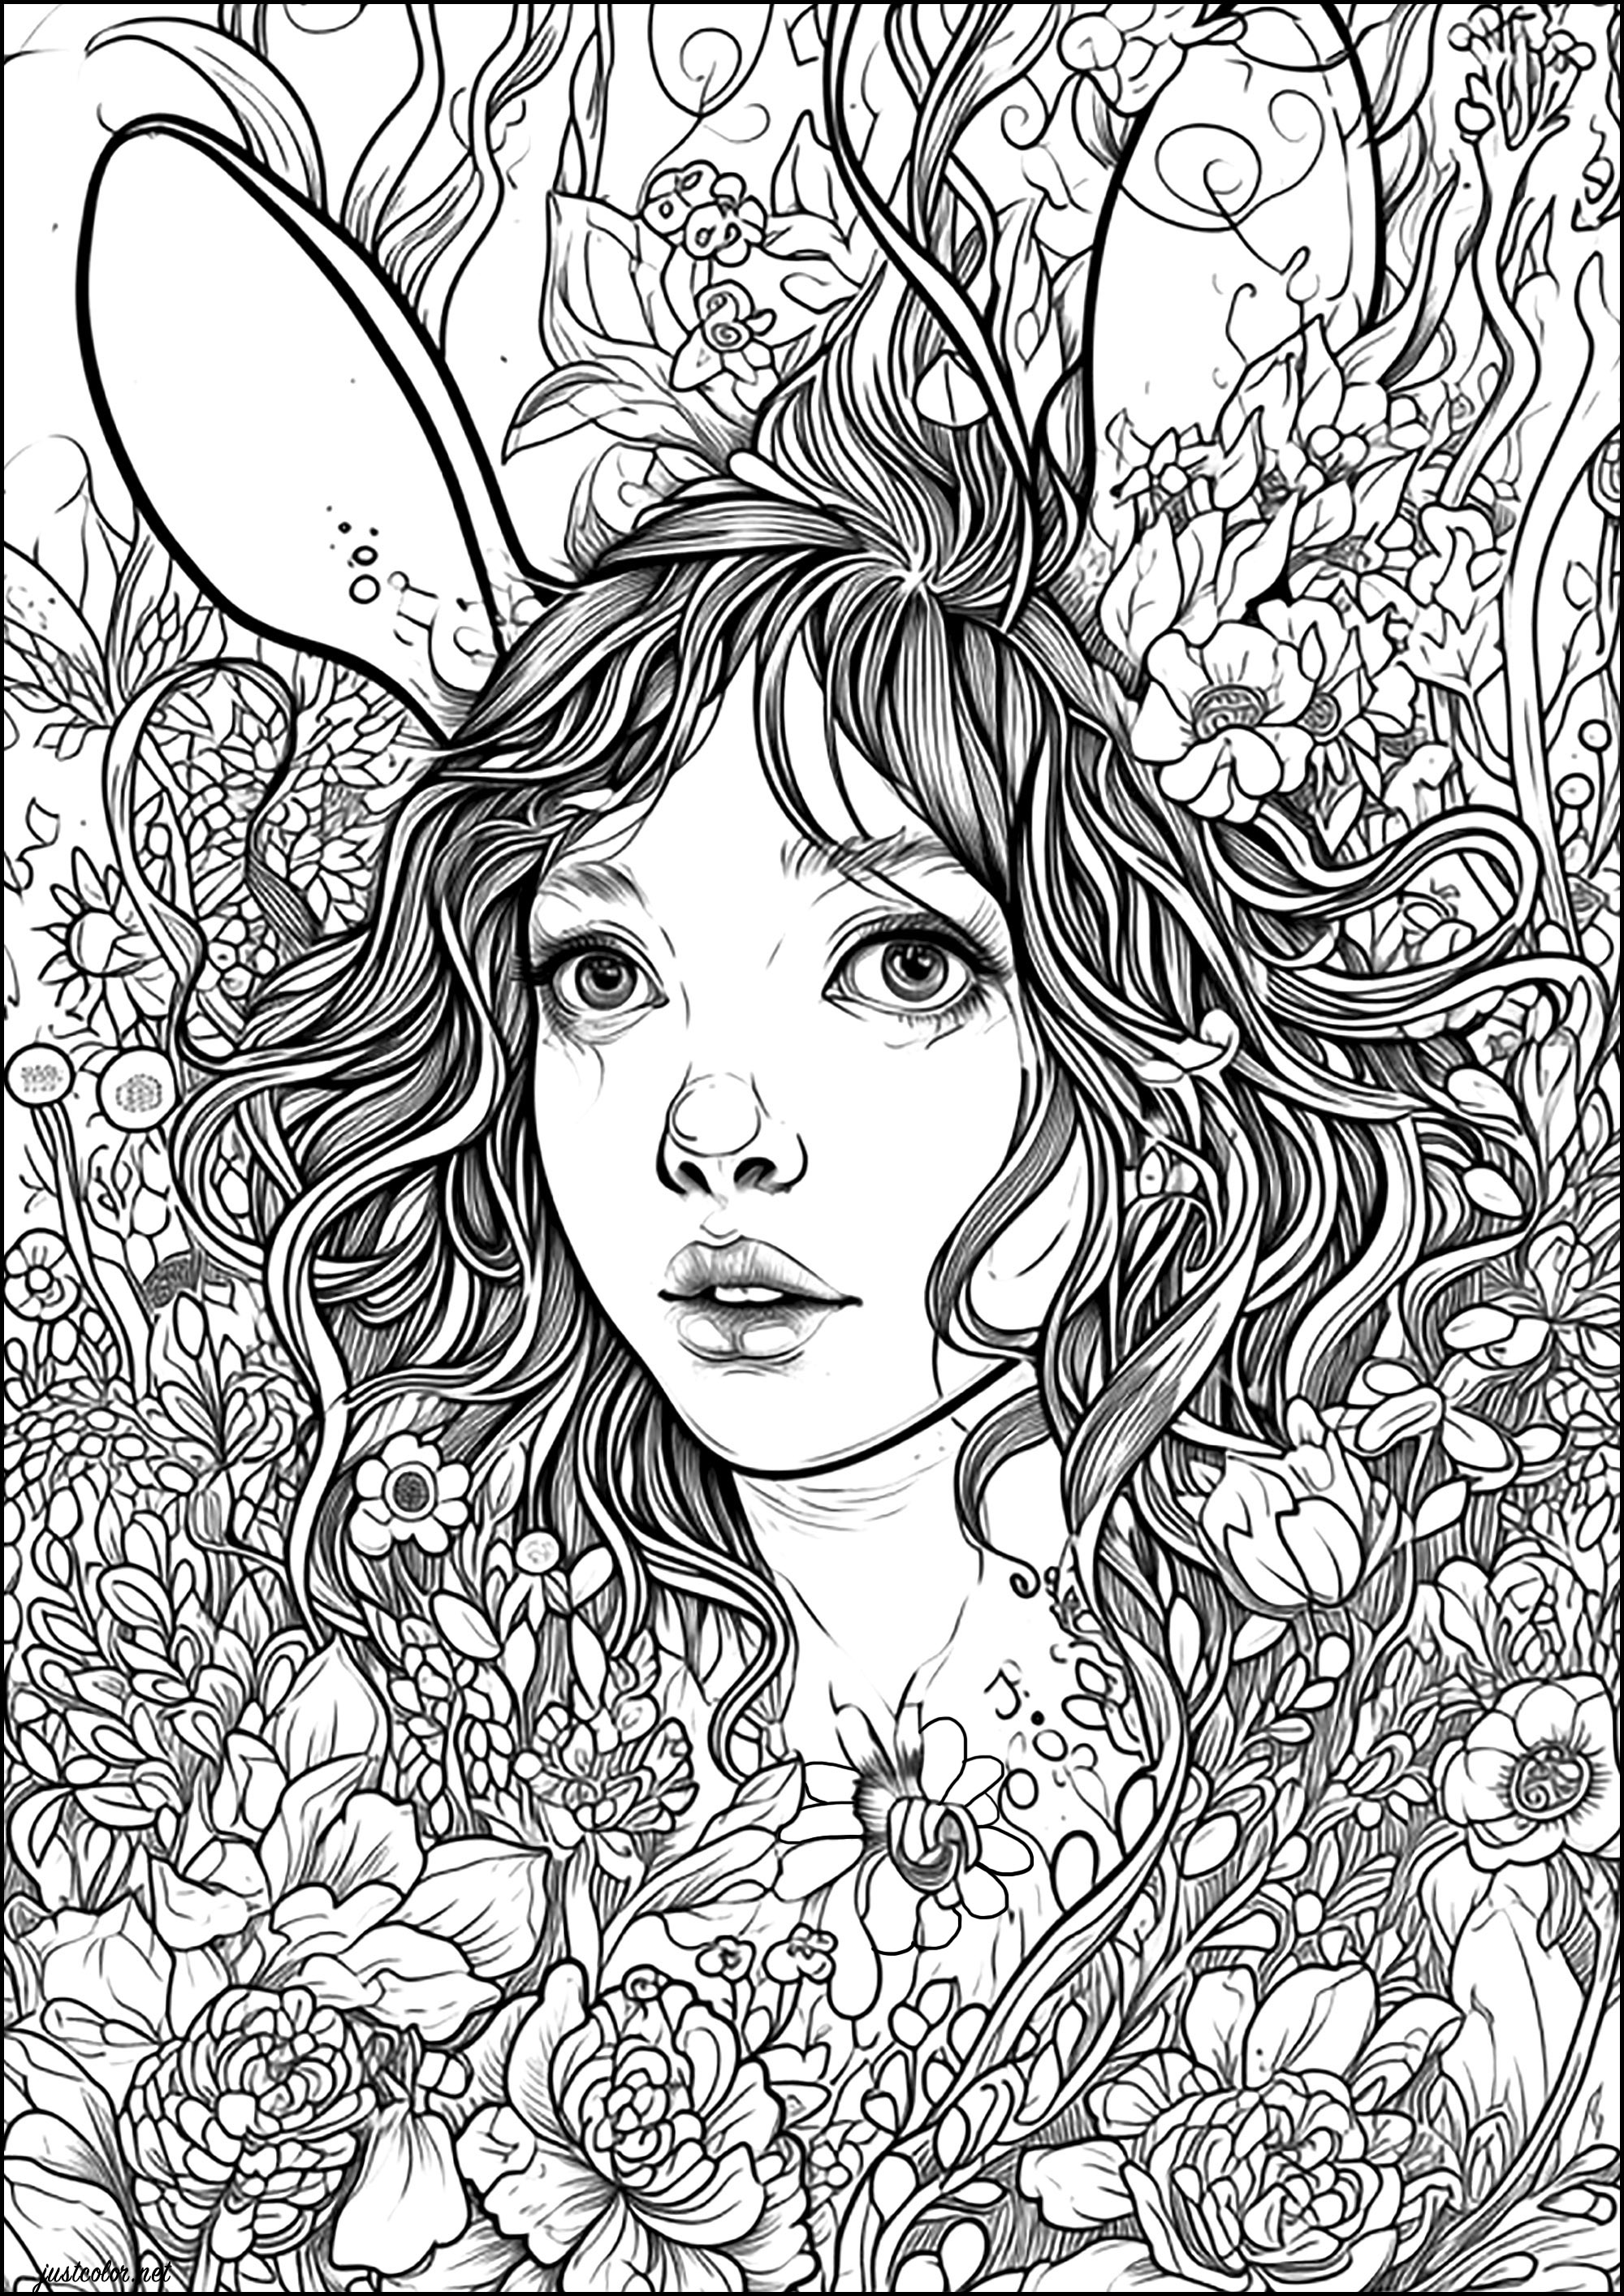 Die Kaninchenfrau. Ein Zauberspruch verwandelt diese junge Frau in ein Kaninchen... Sie versteckt sich zwischen den Blumen und wartet auf jemanden, der sie rettet.